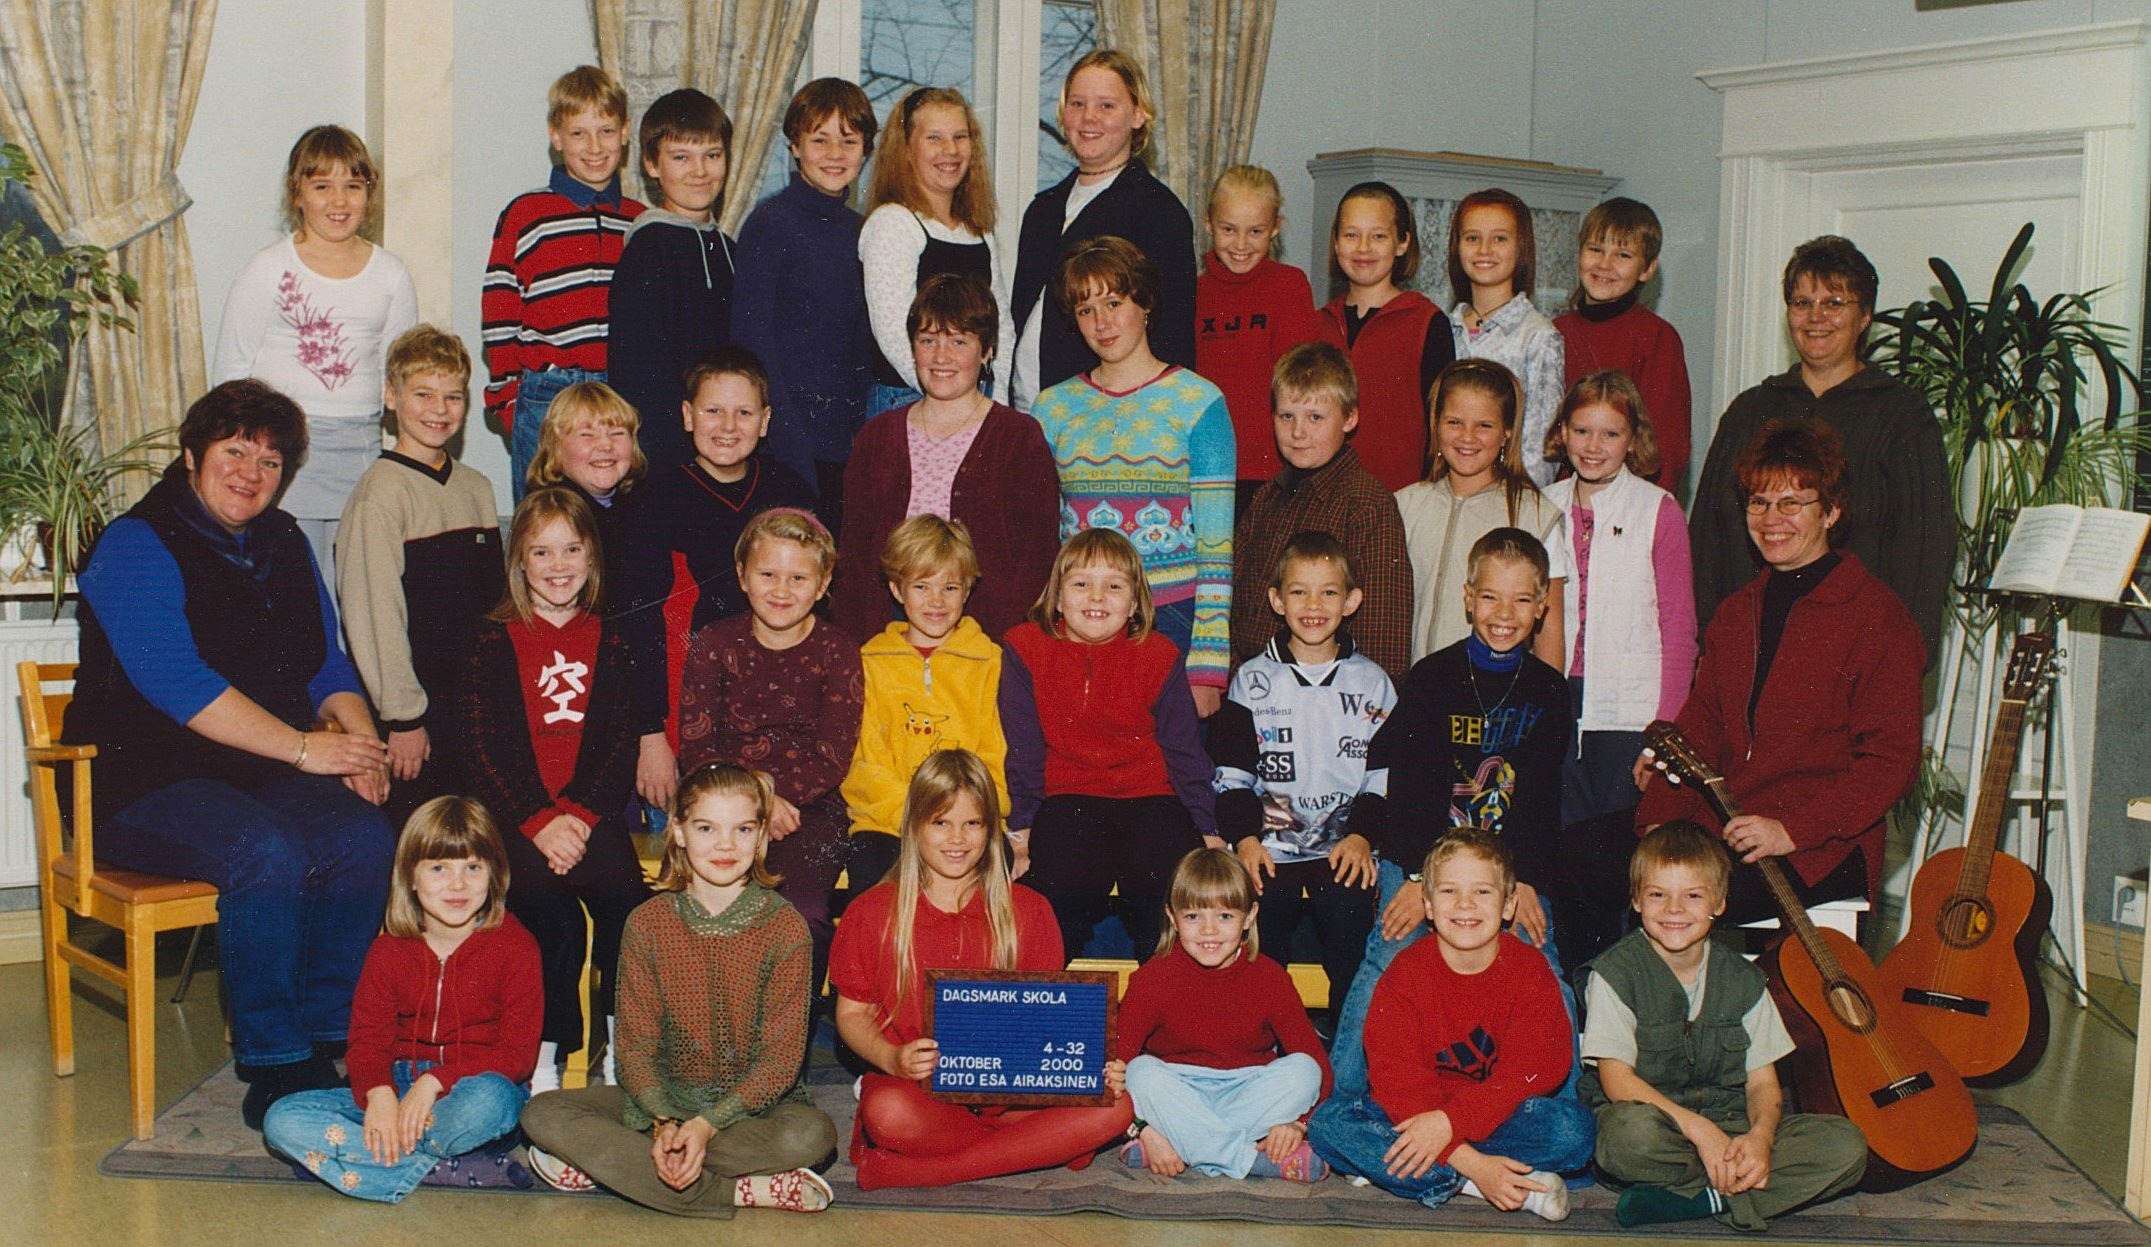 År 2000, Dagsmark skola.